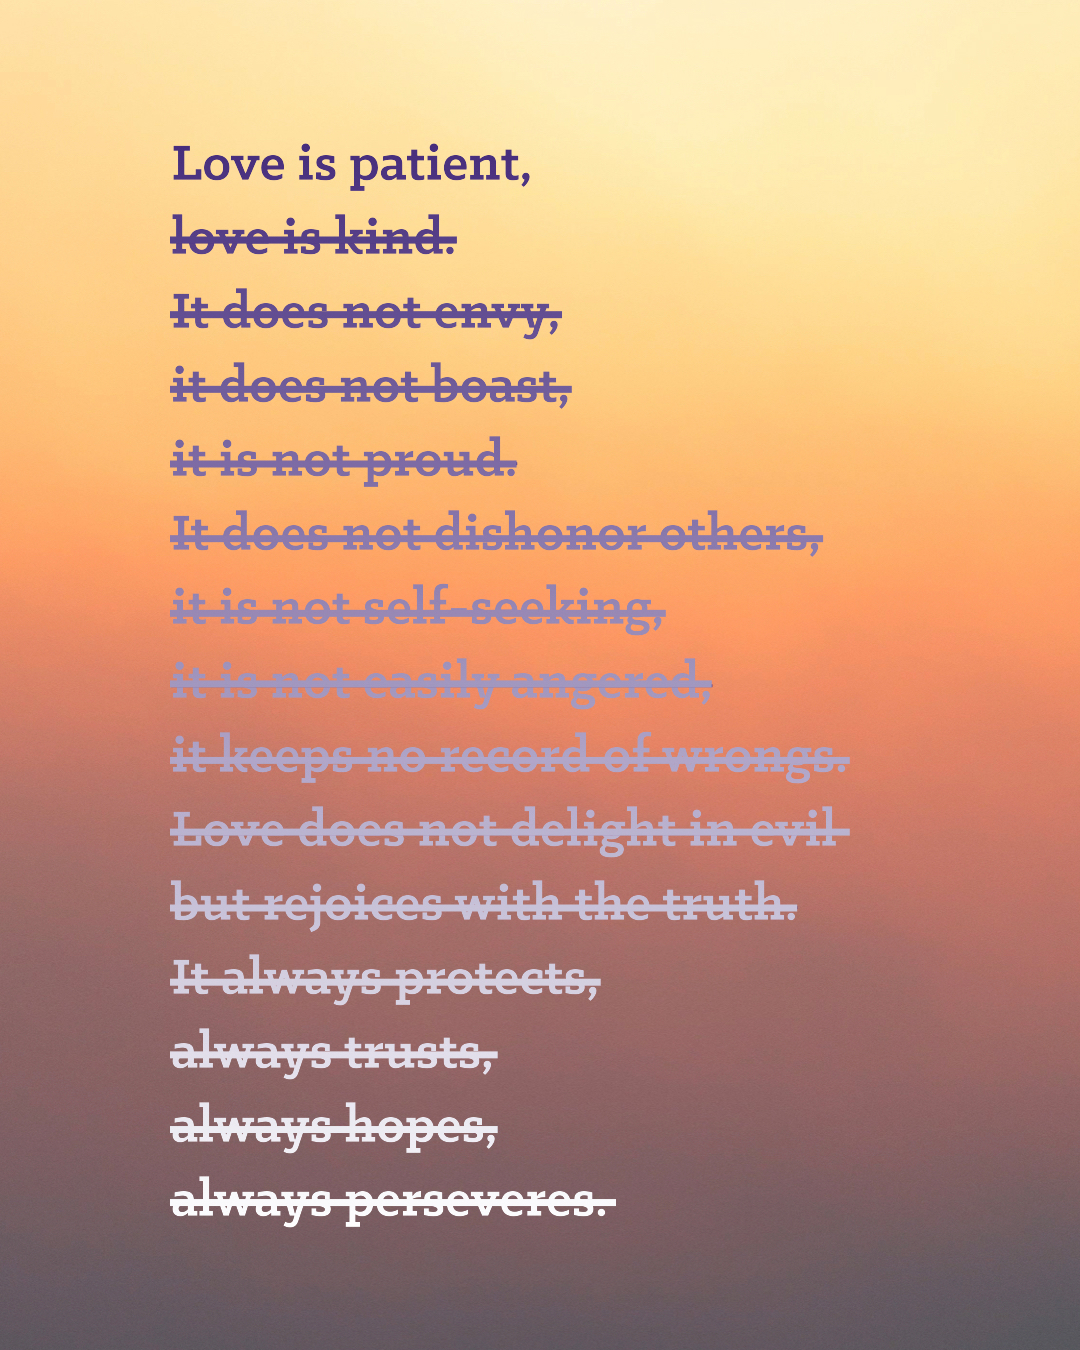 Love is patient.